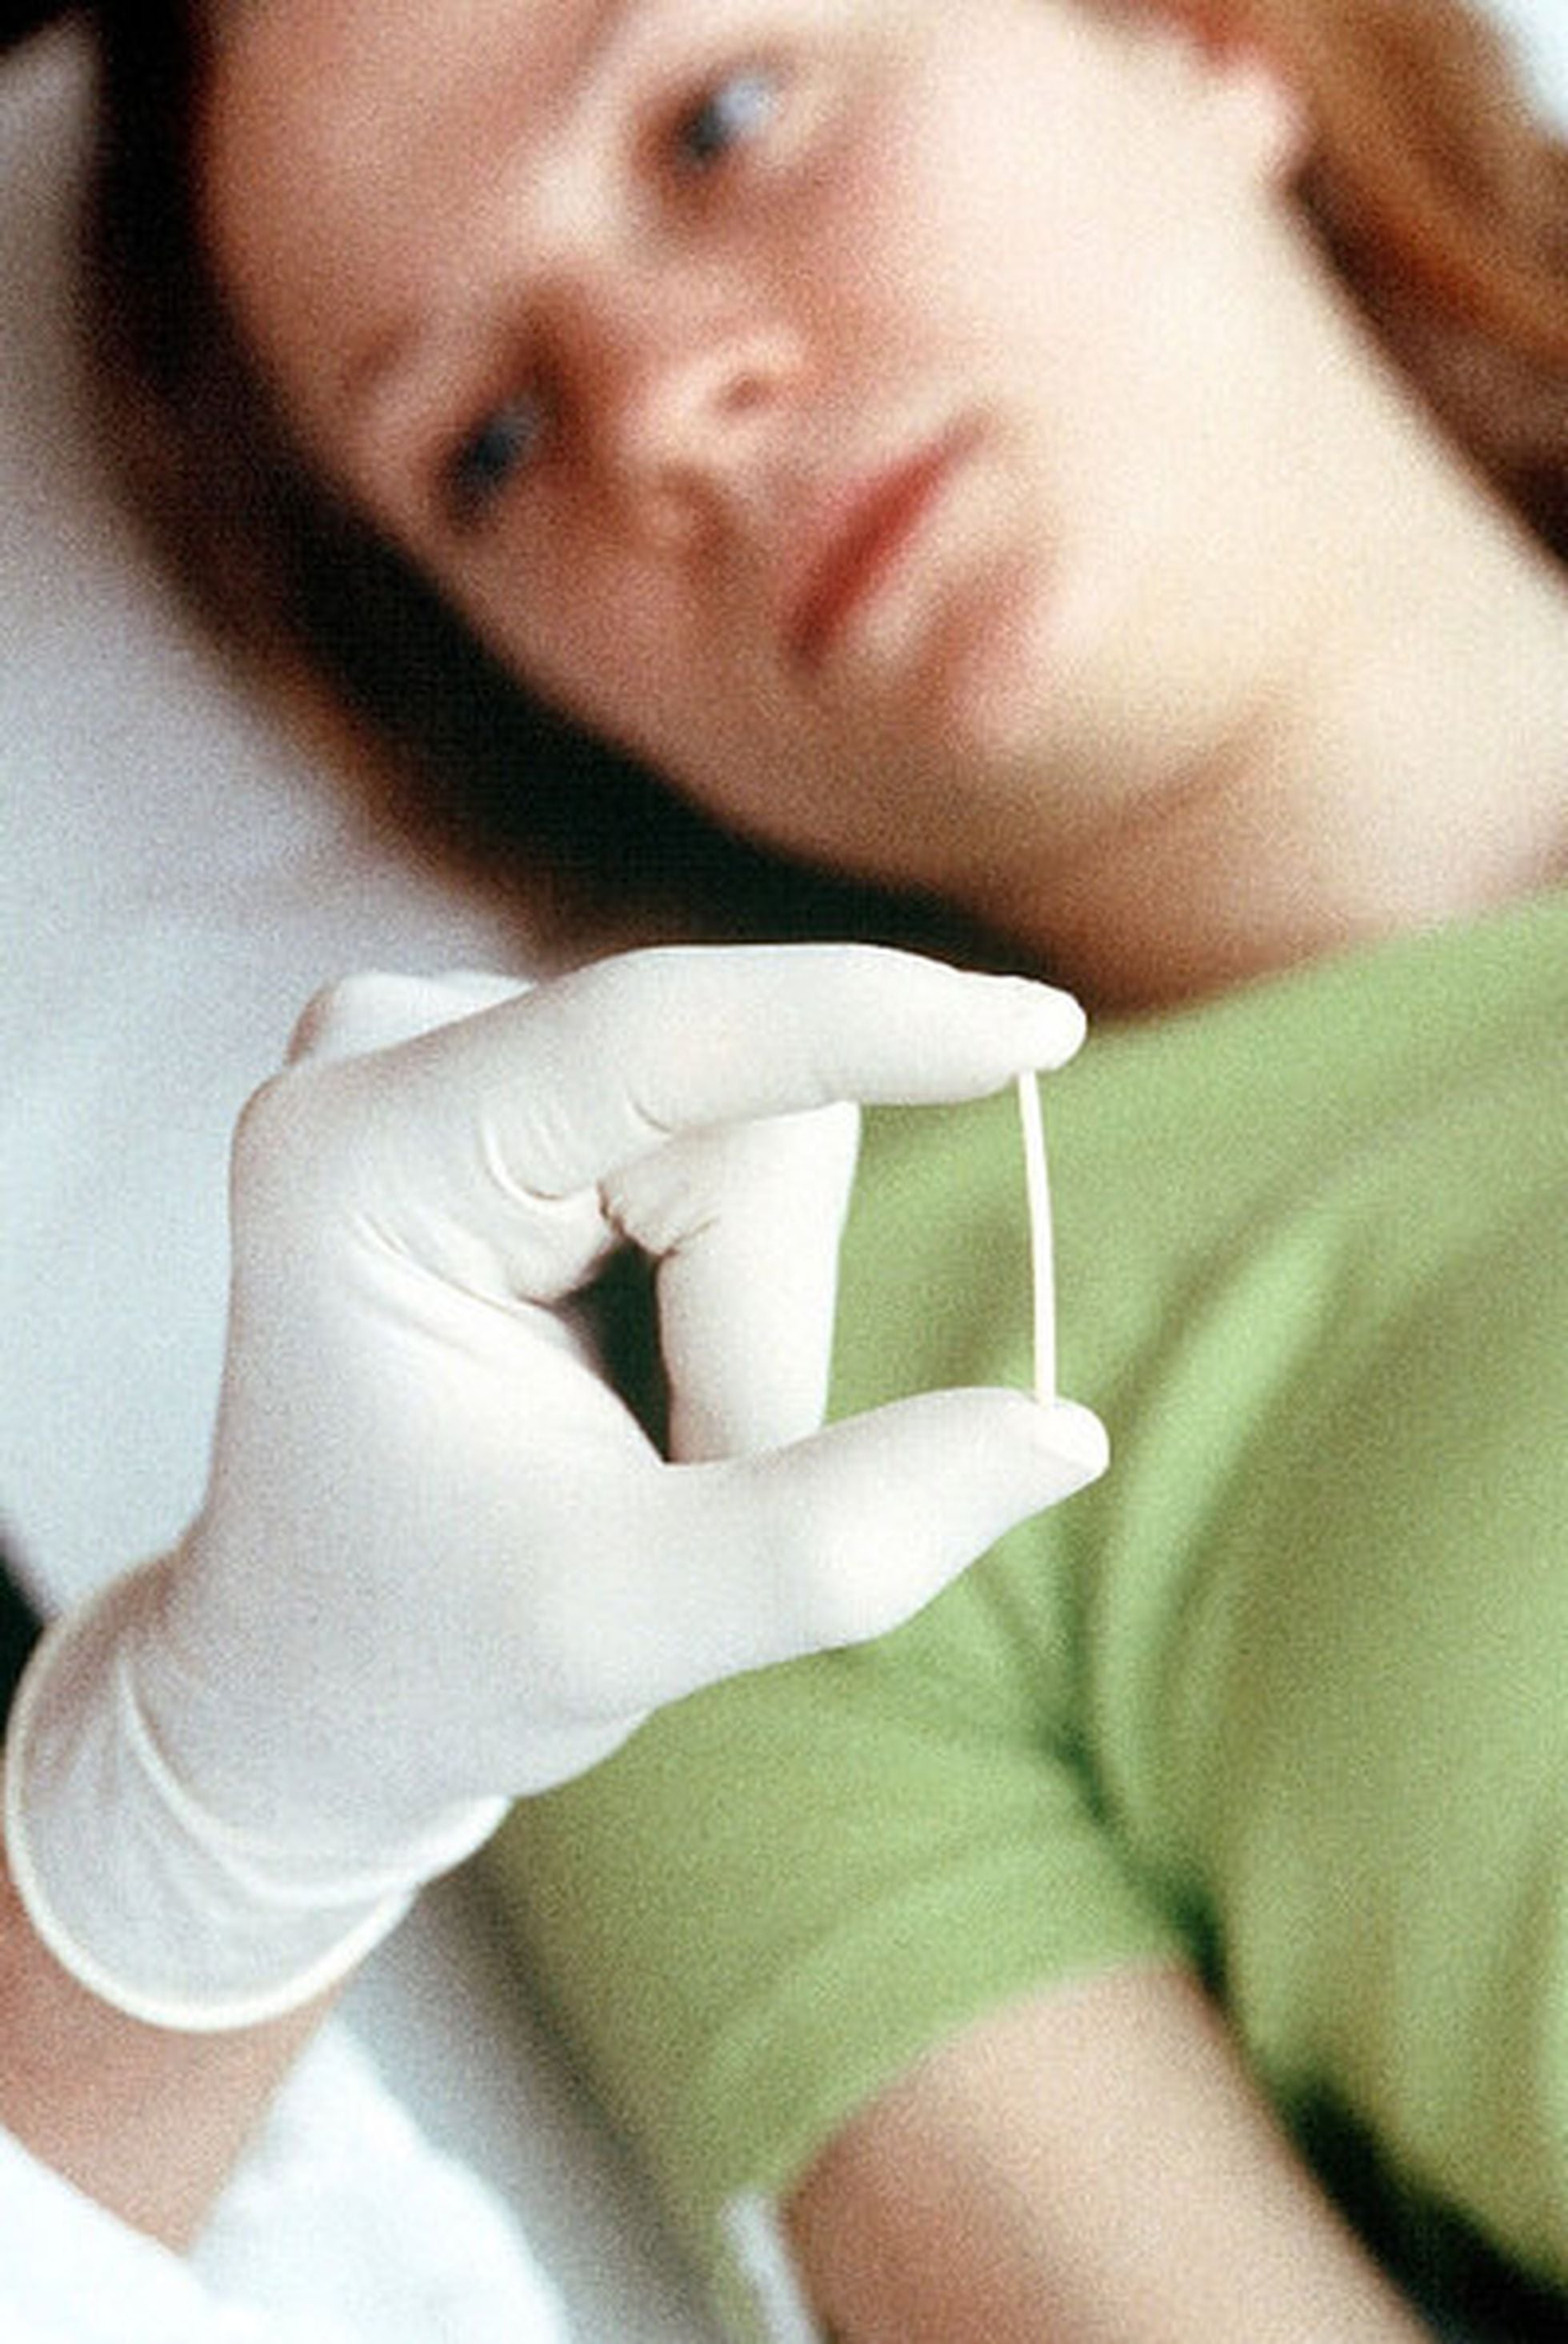 de 1.000 a usar un implante anticonceptivo | Sociedad | EL